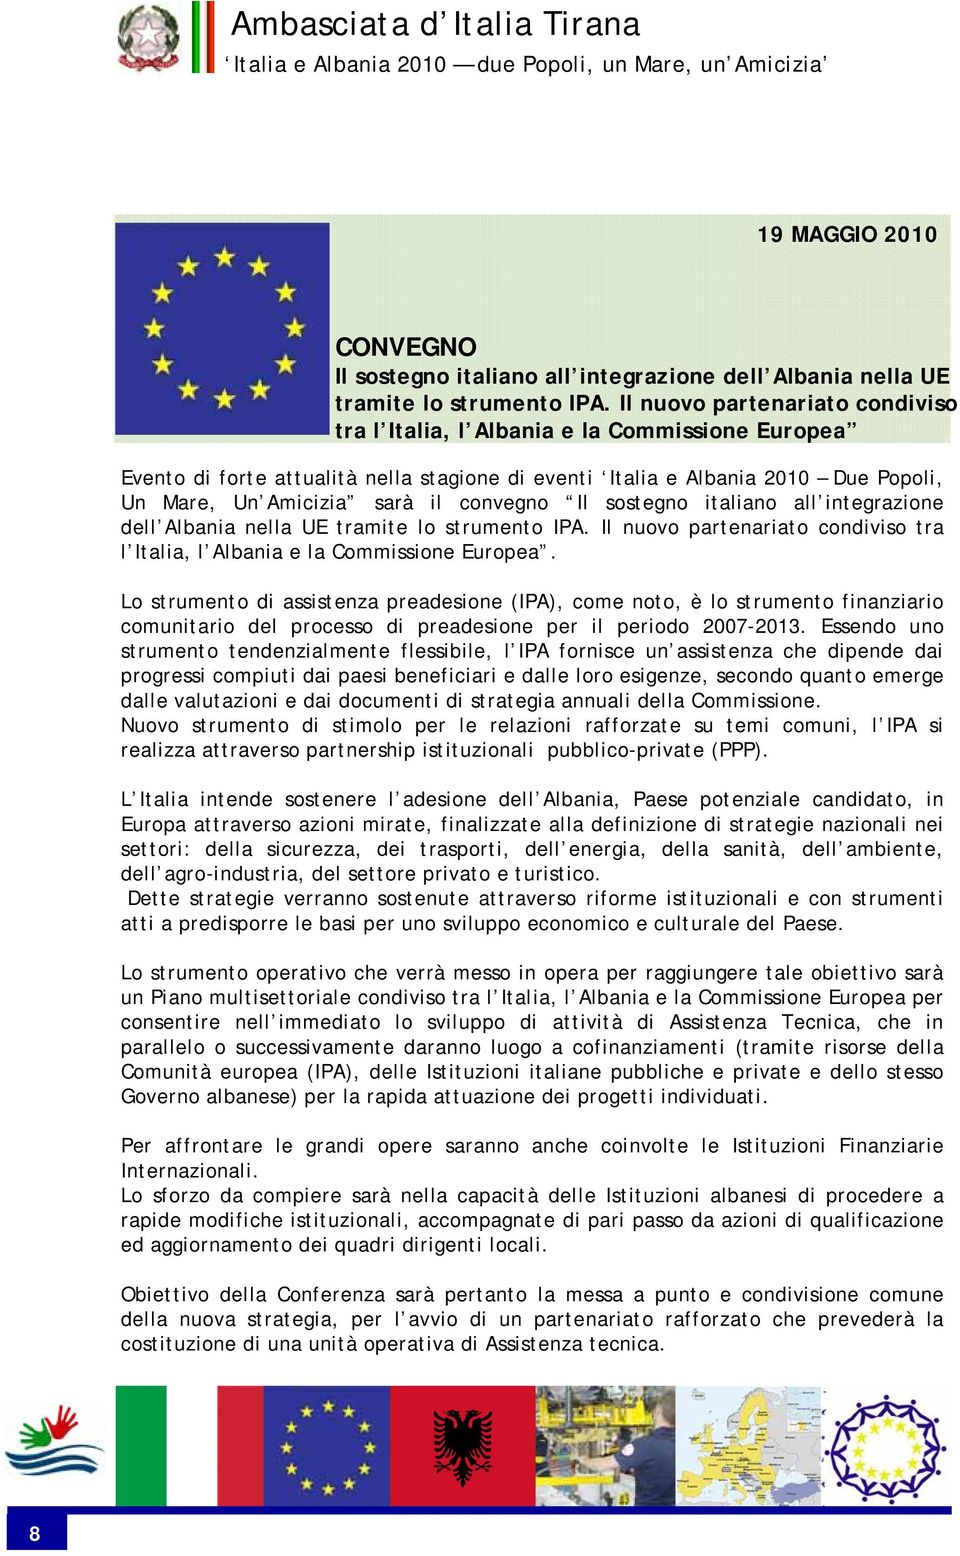 convegno Il sostegno italiano all integrazione dell Albania nella UE tramite lo strumento IPA. Il nuovo partenariato condiviso tra l Italia, l Albania e la Commissione Europea.